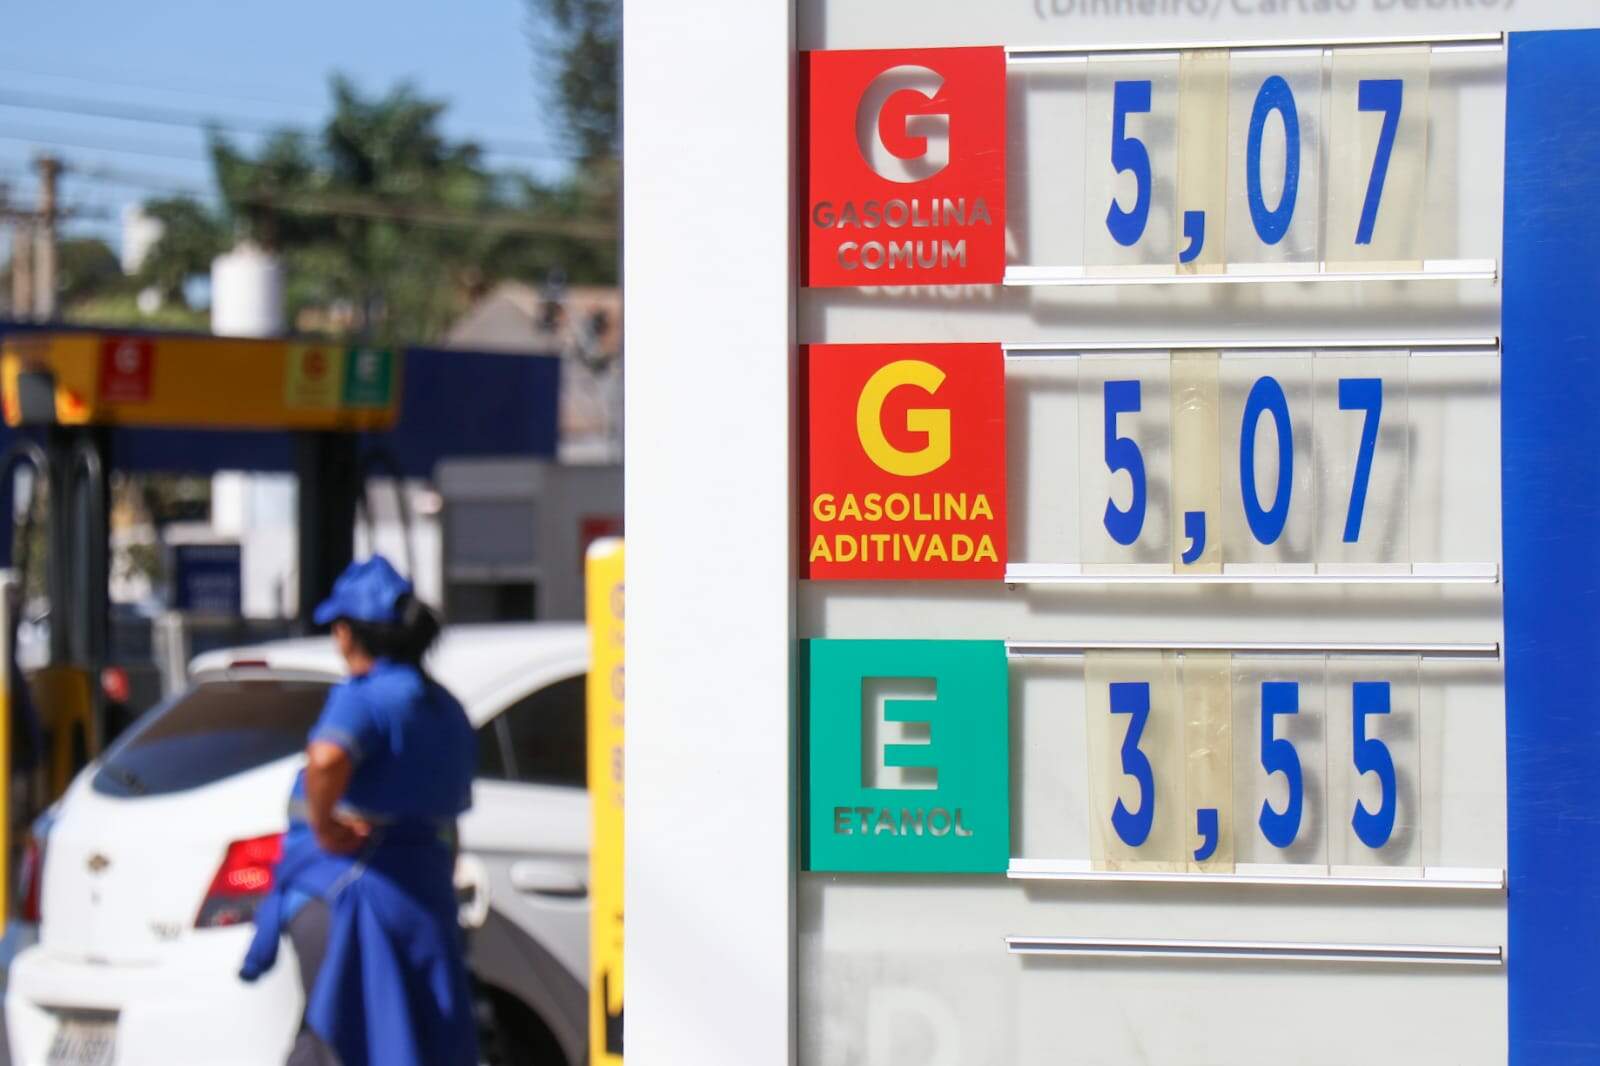 ICMS fixo vai anular queda de R$ 0,29 na gasolina, diz sindicato